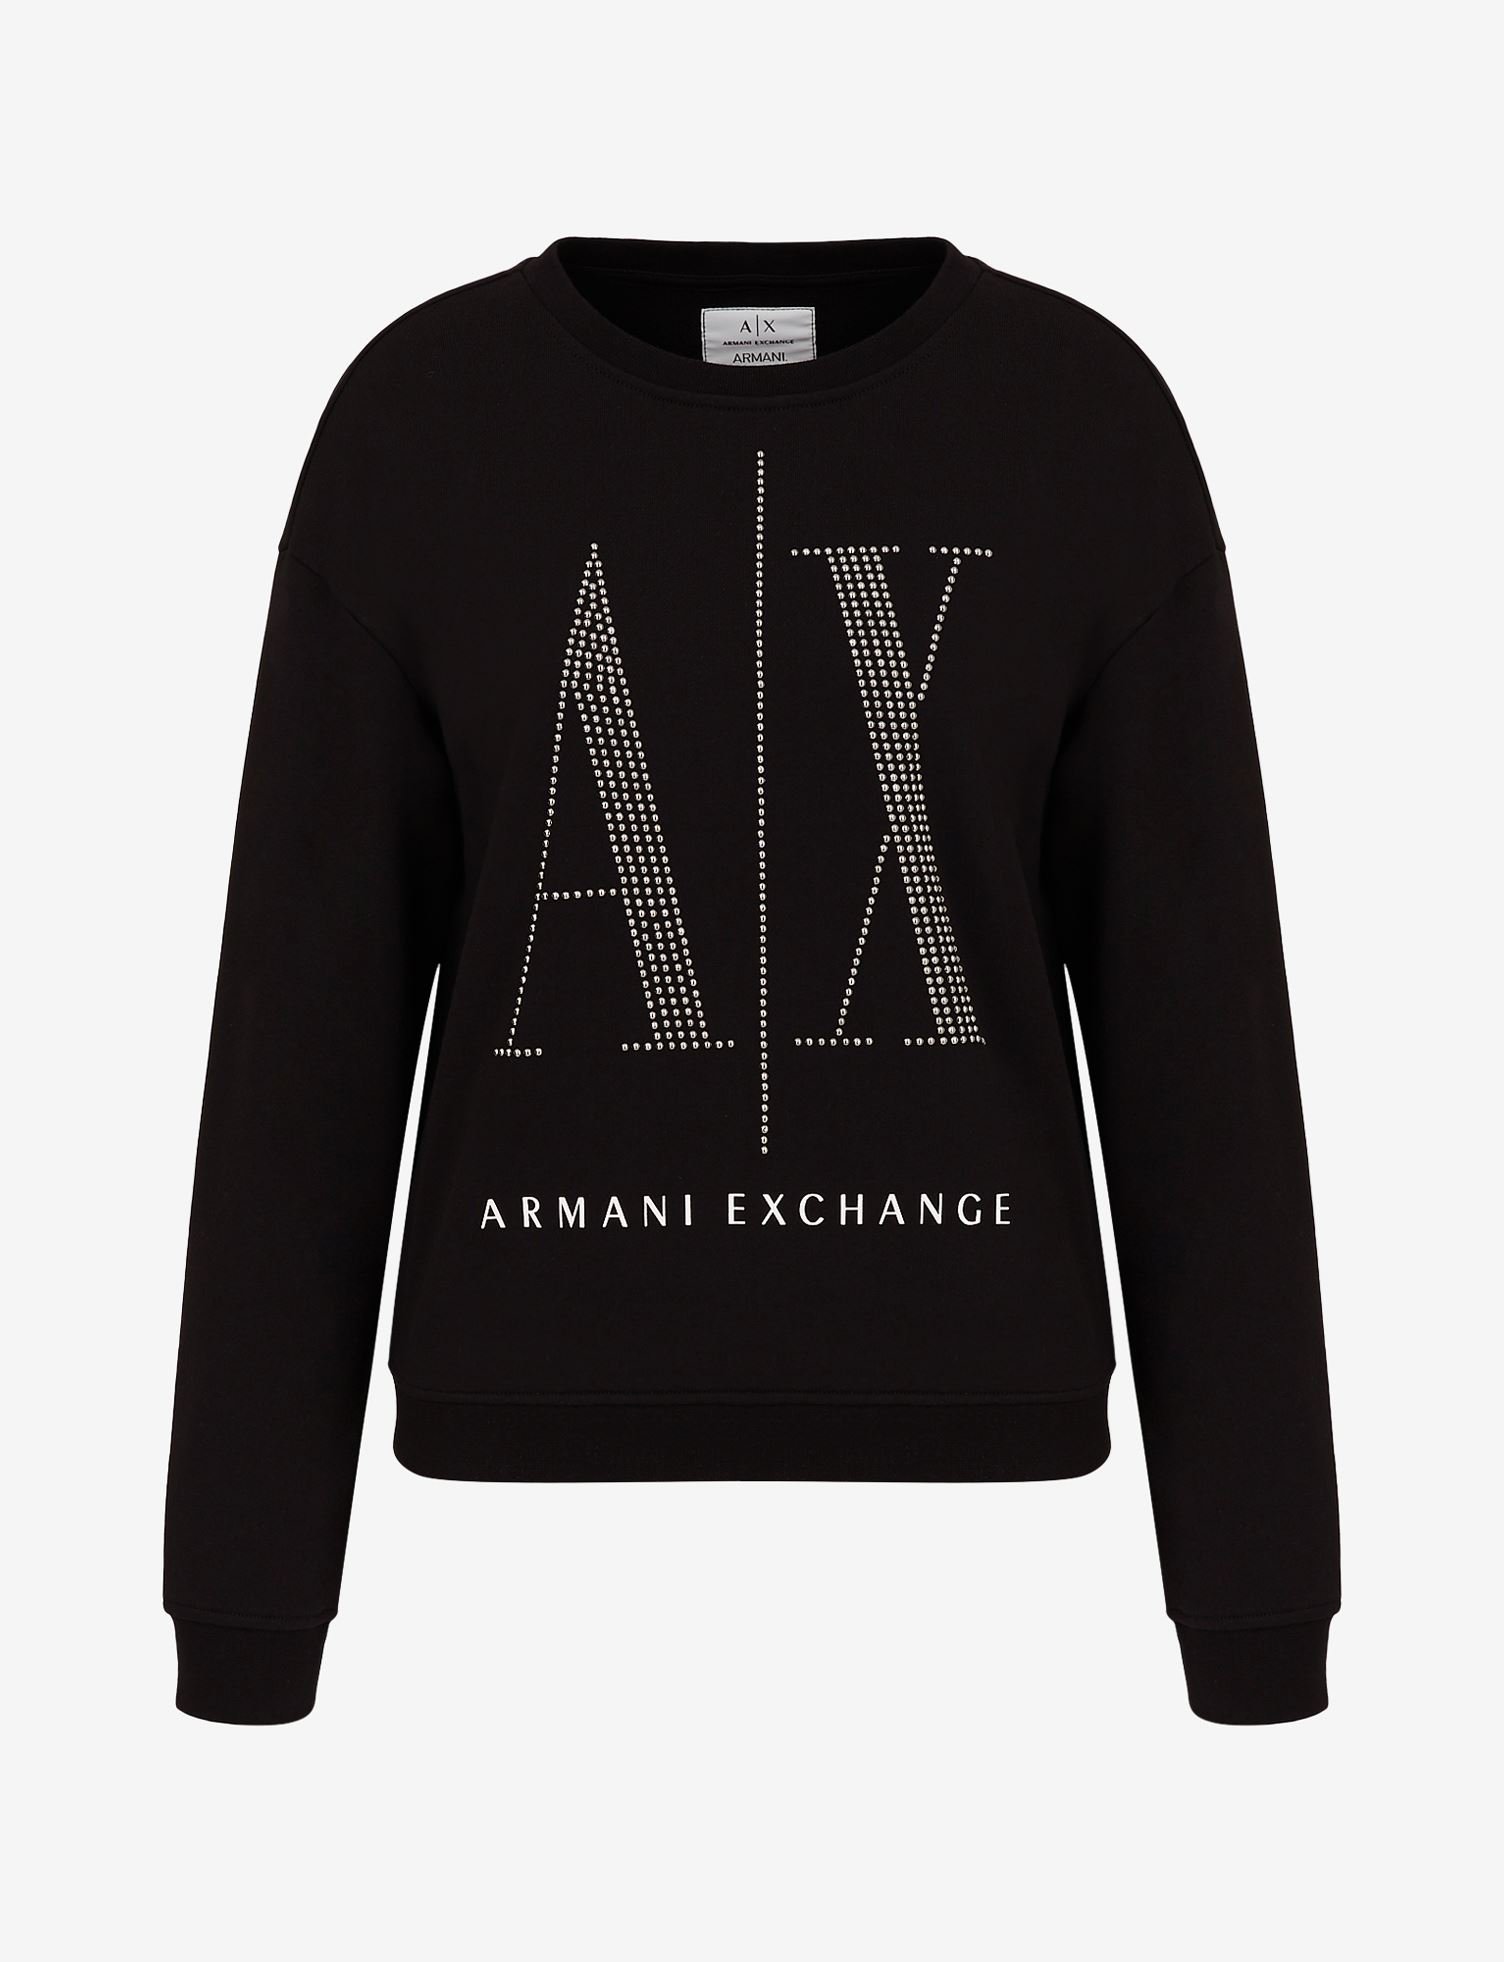 Armani Exchange_Icon Logo Sweatshirt_8950_7160.jpg